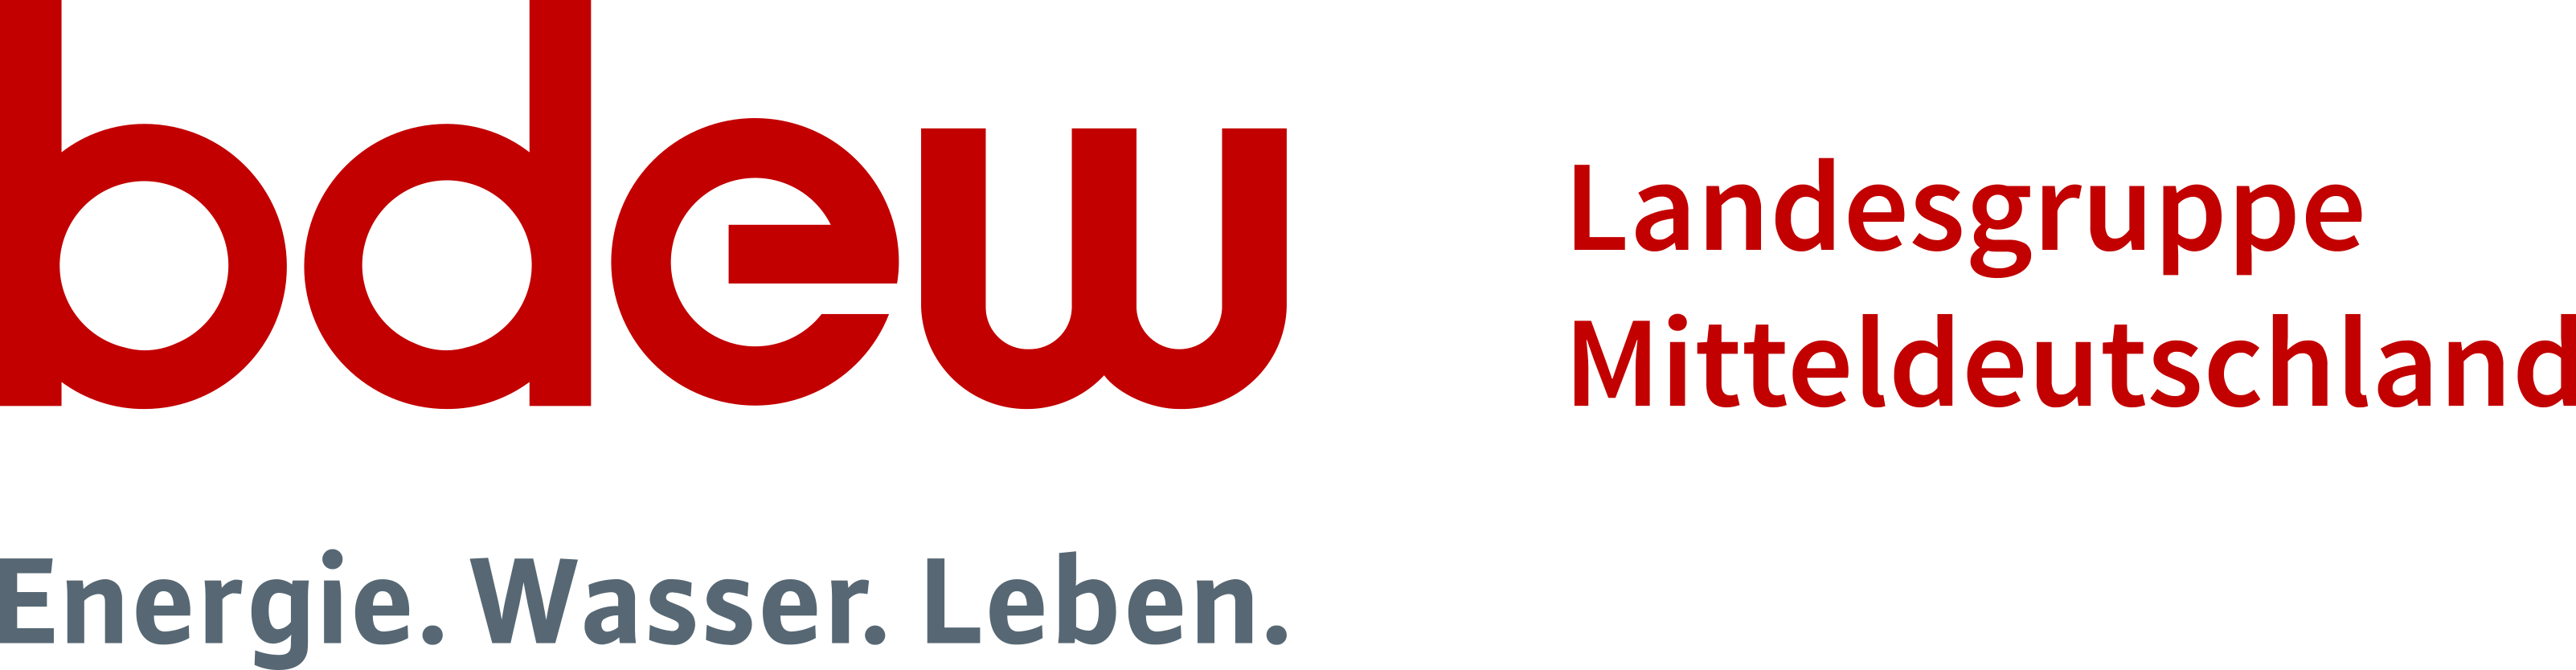 Logo BDEW Landesgruppe Mitteldeutschland